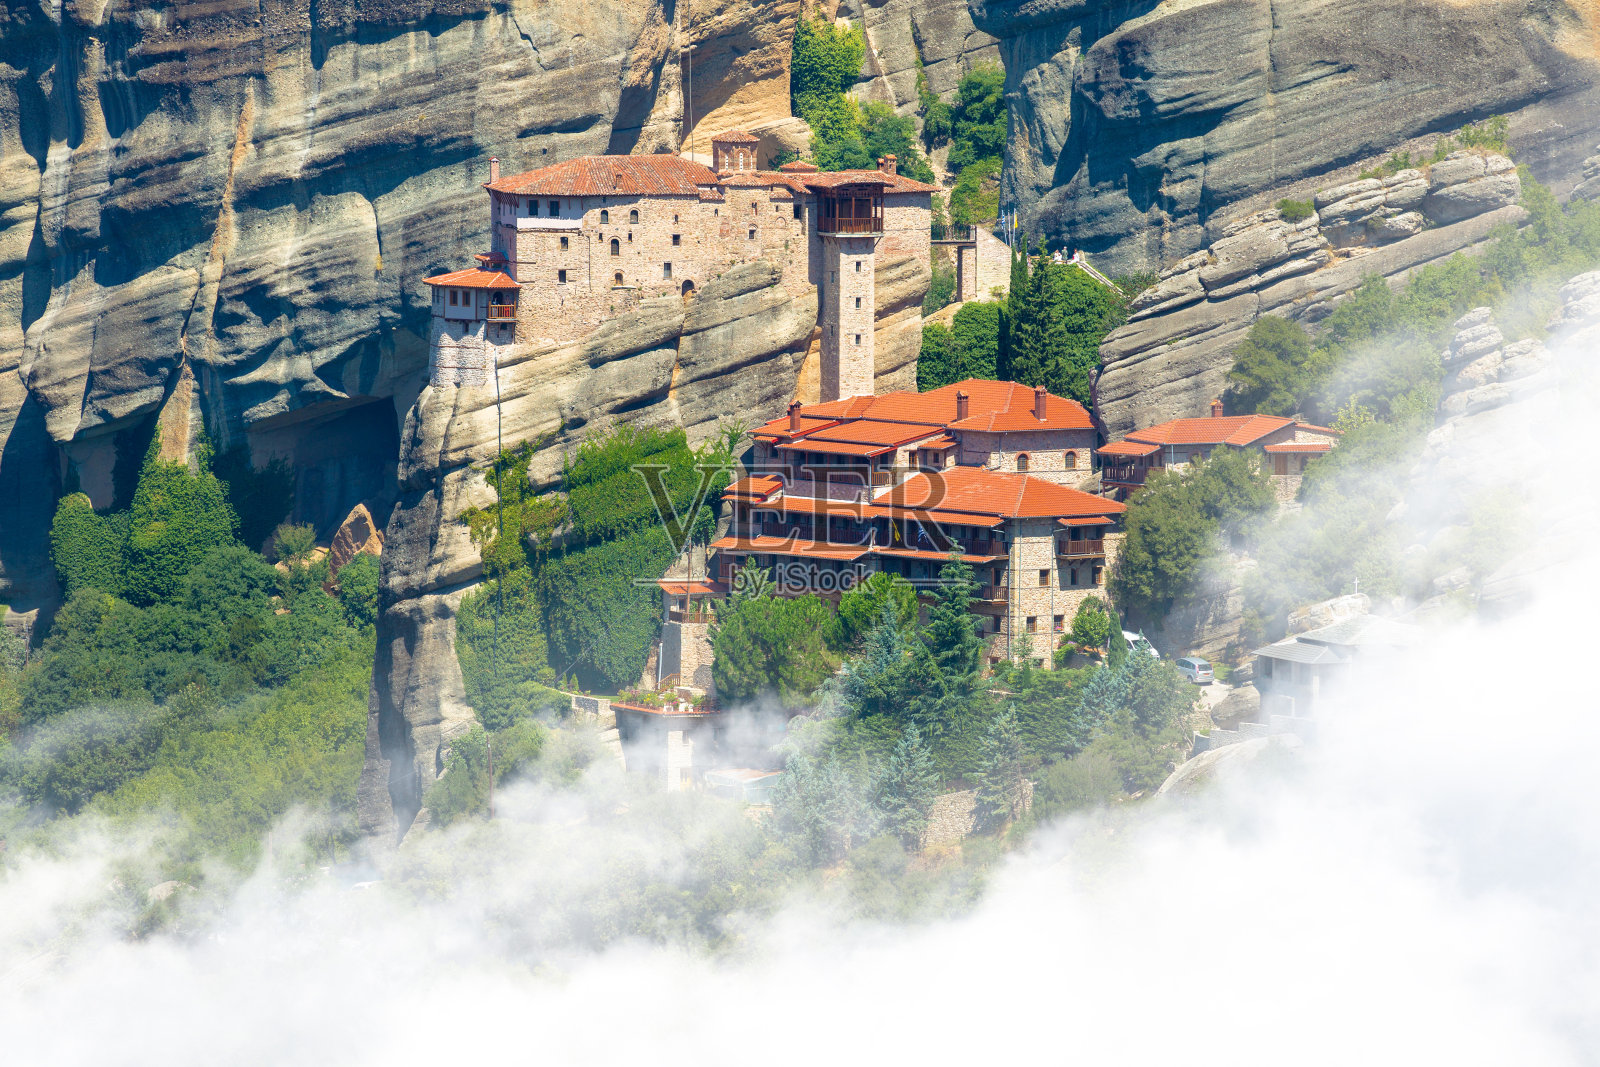 有迈特拉岩和鲁萨努修道院的山景照片摄影图片